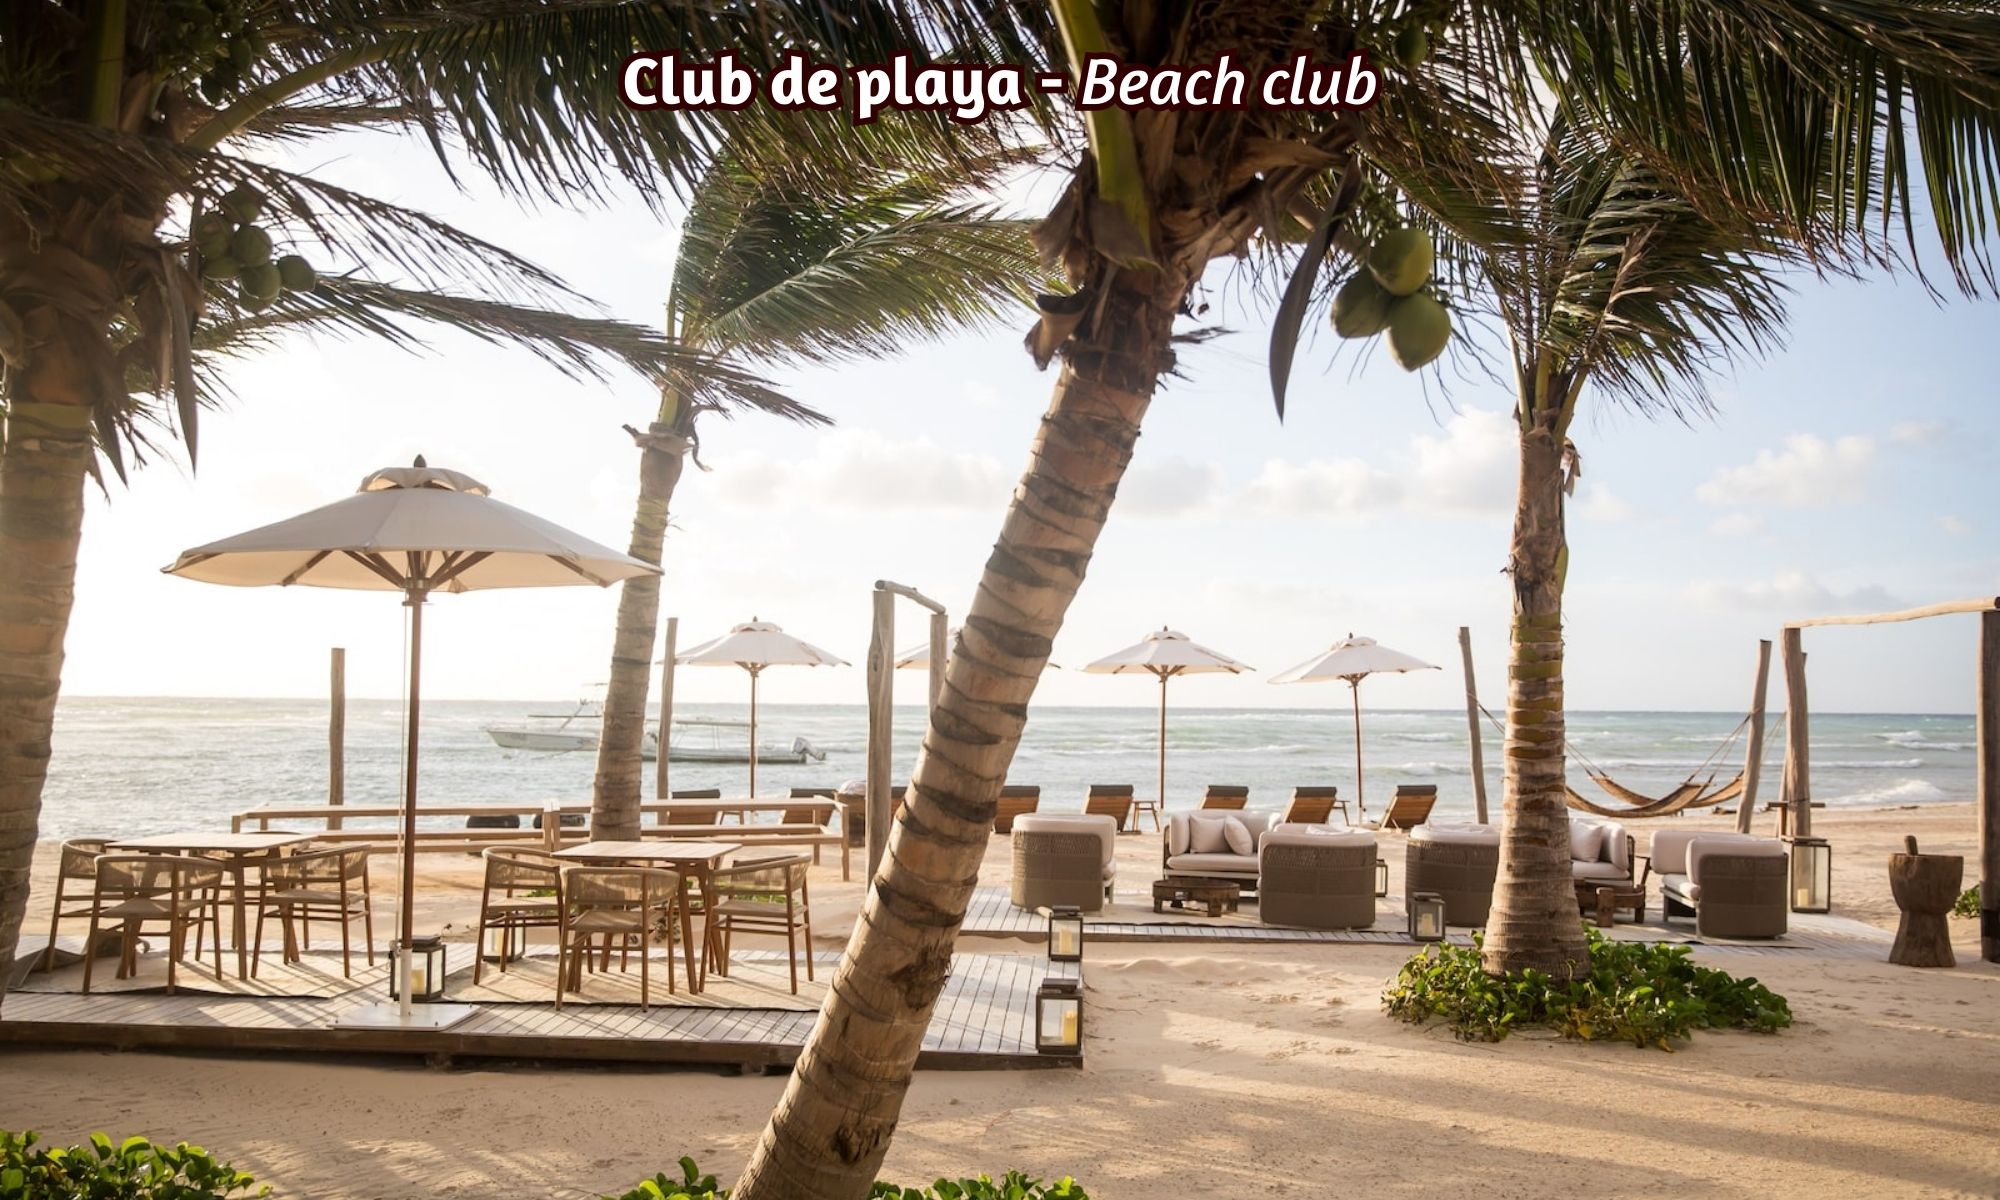 Condo with beach club, golf, pool, for sale in Playa del Carmen.